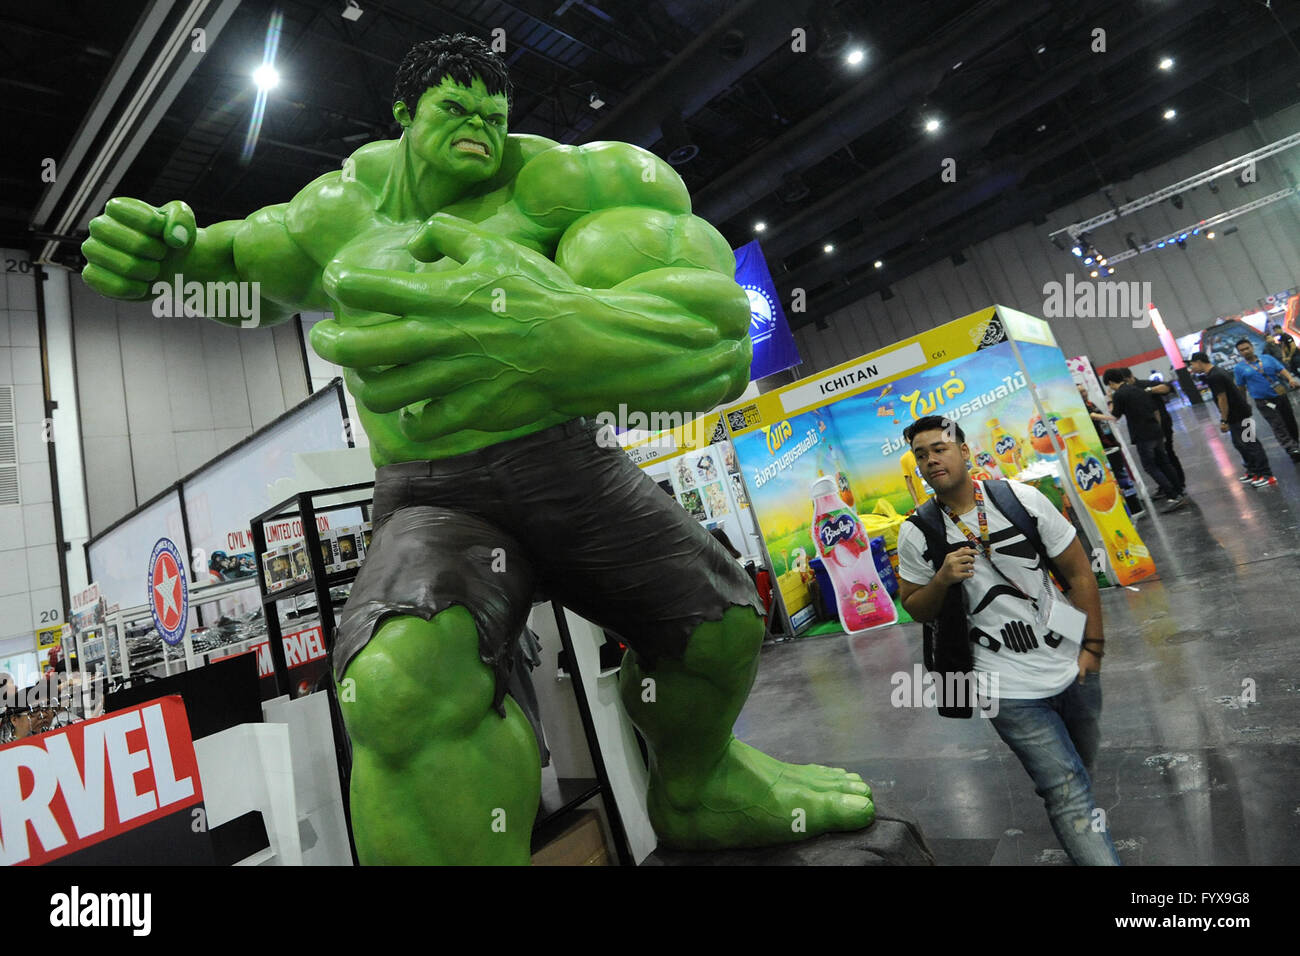 160429) -- BANGKOK, Aprile 29, 2016 (Xinhua) -- Un uomo cammina davanti a  un modello di Hulk durante il 2016 Bangkok Comic Con a Bangkok, Thailandia,  Aprile 29, 2016. Fumetto e animazione